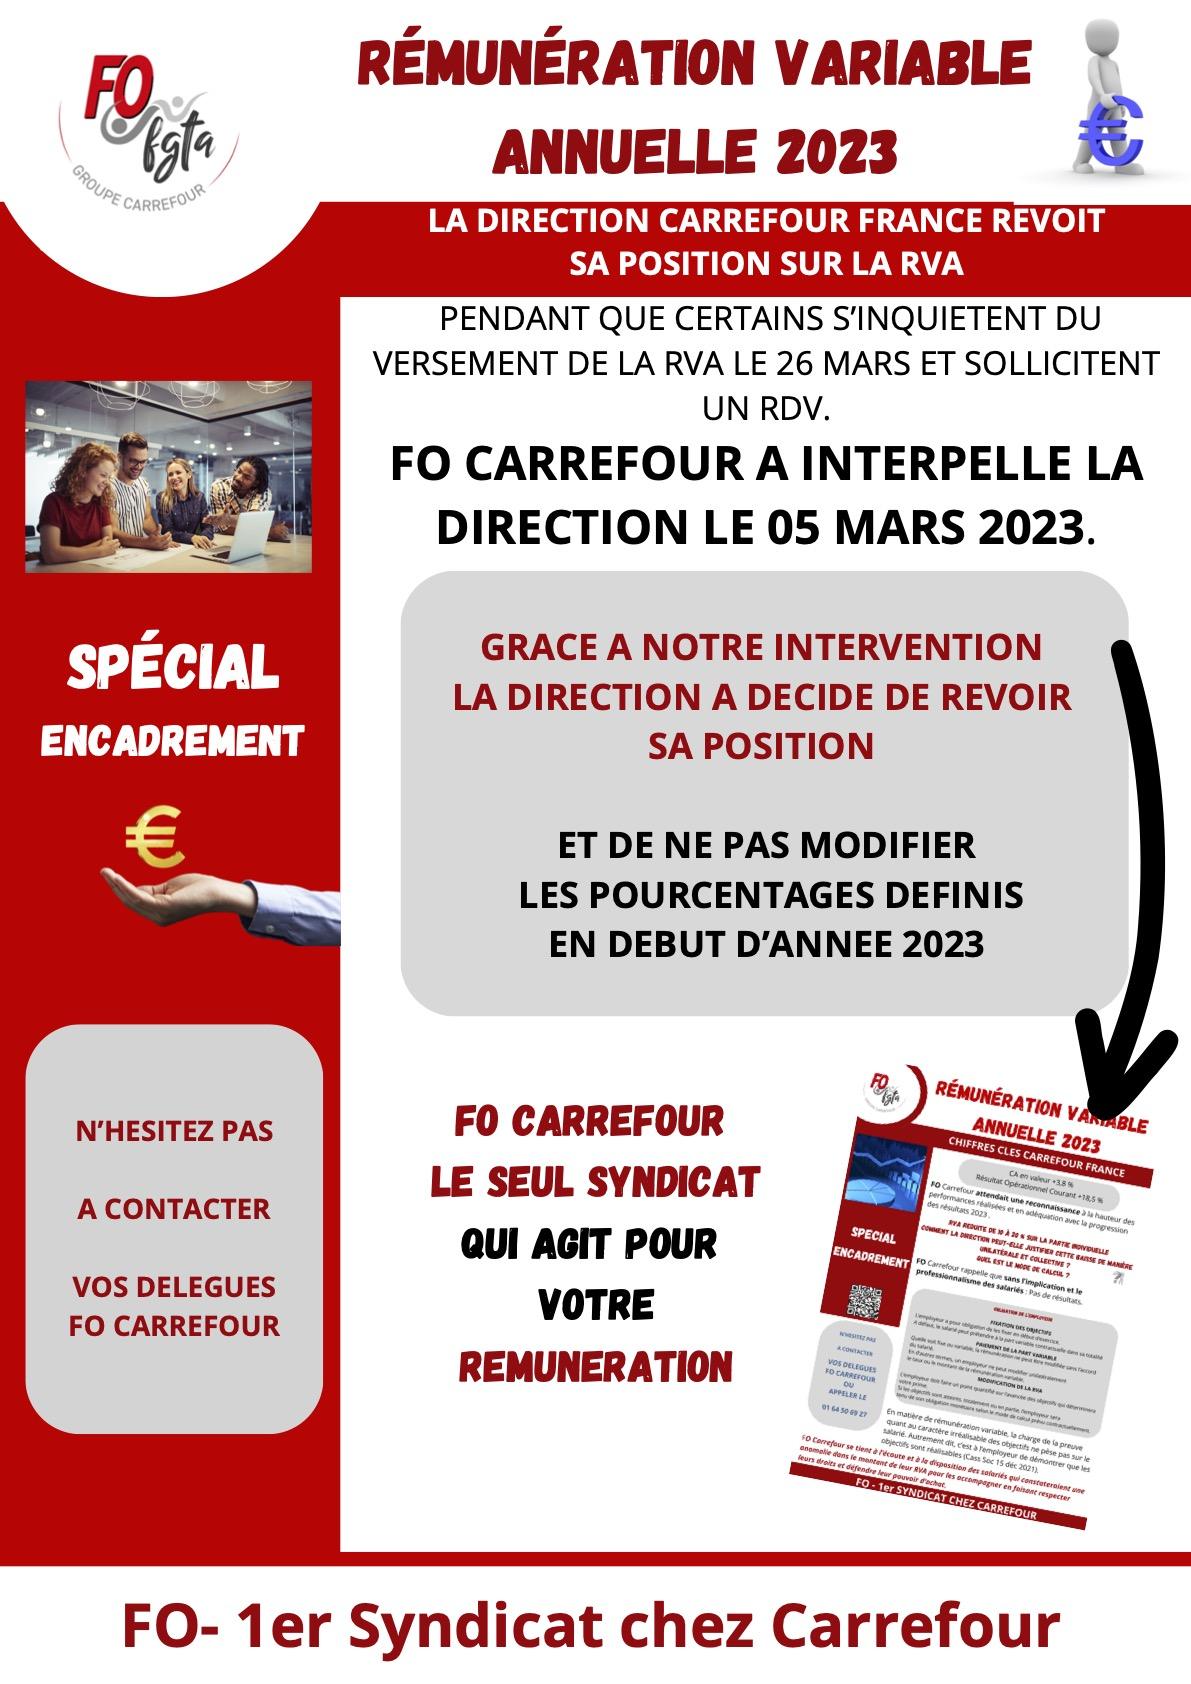 RVA: La Direction Carrefour revoit sa position!